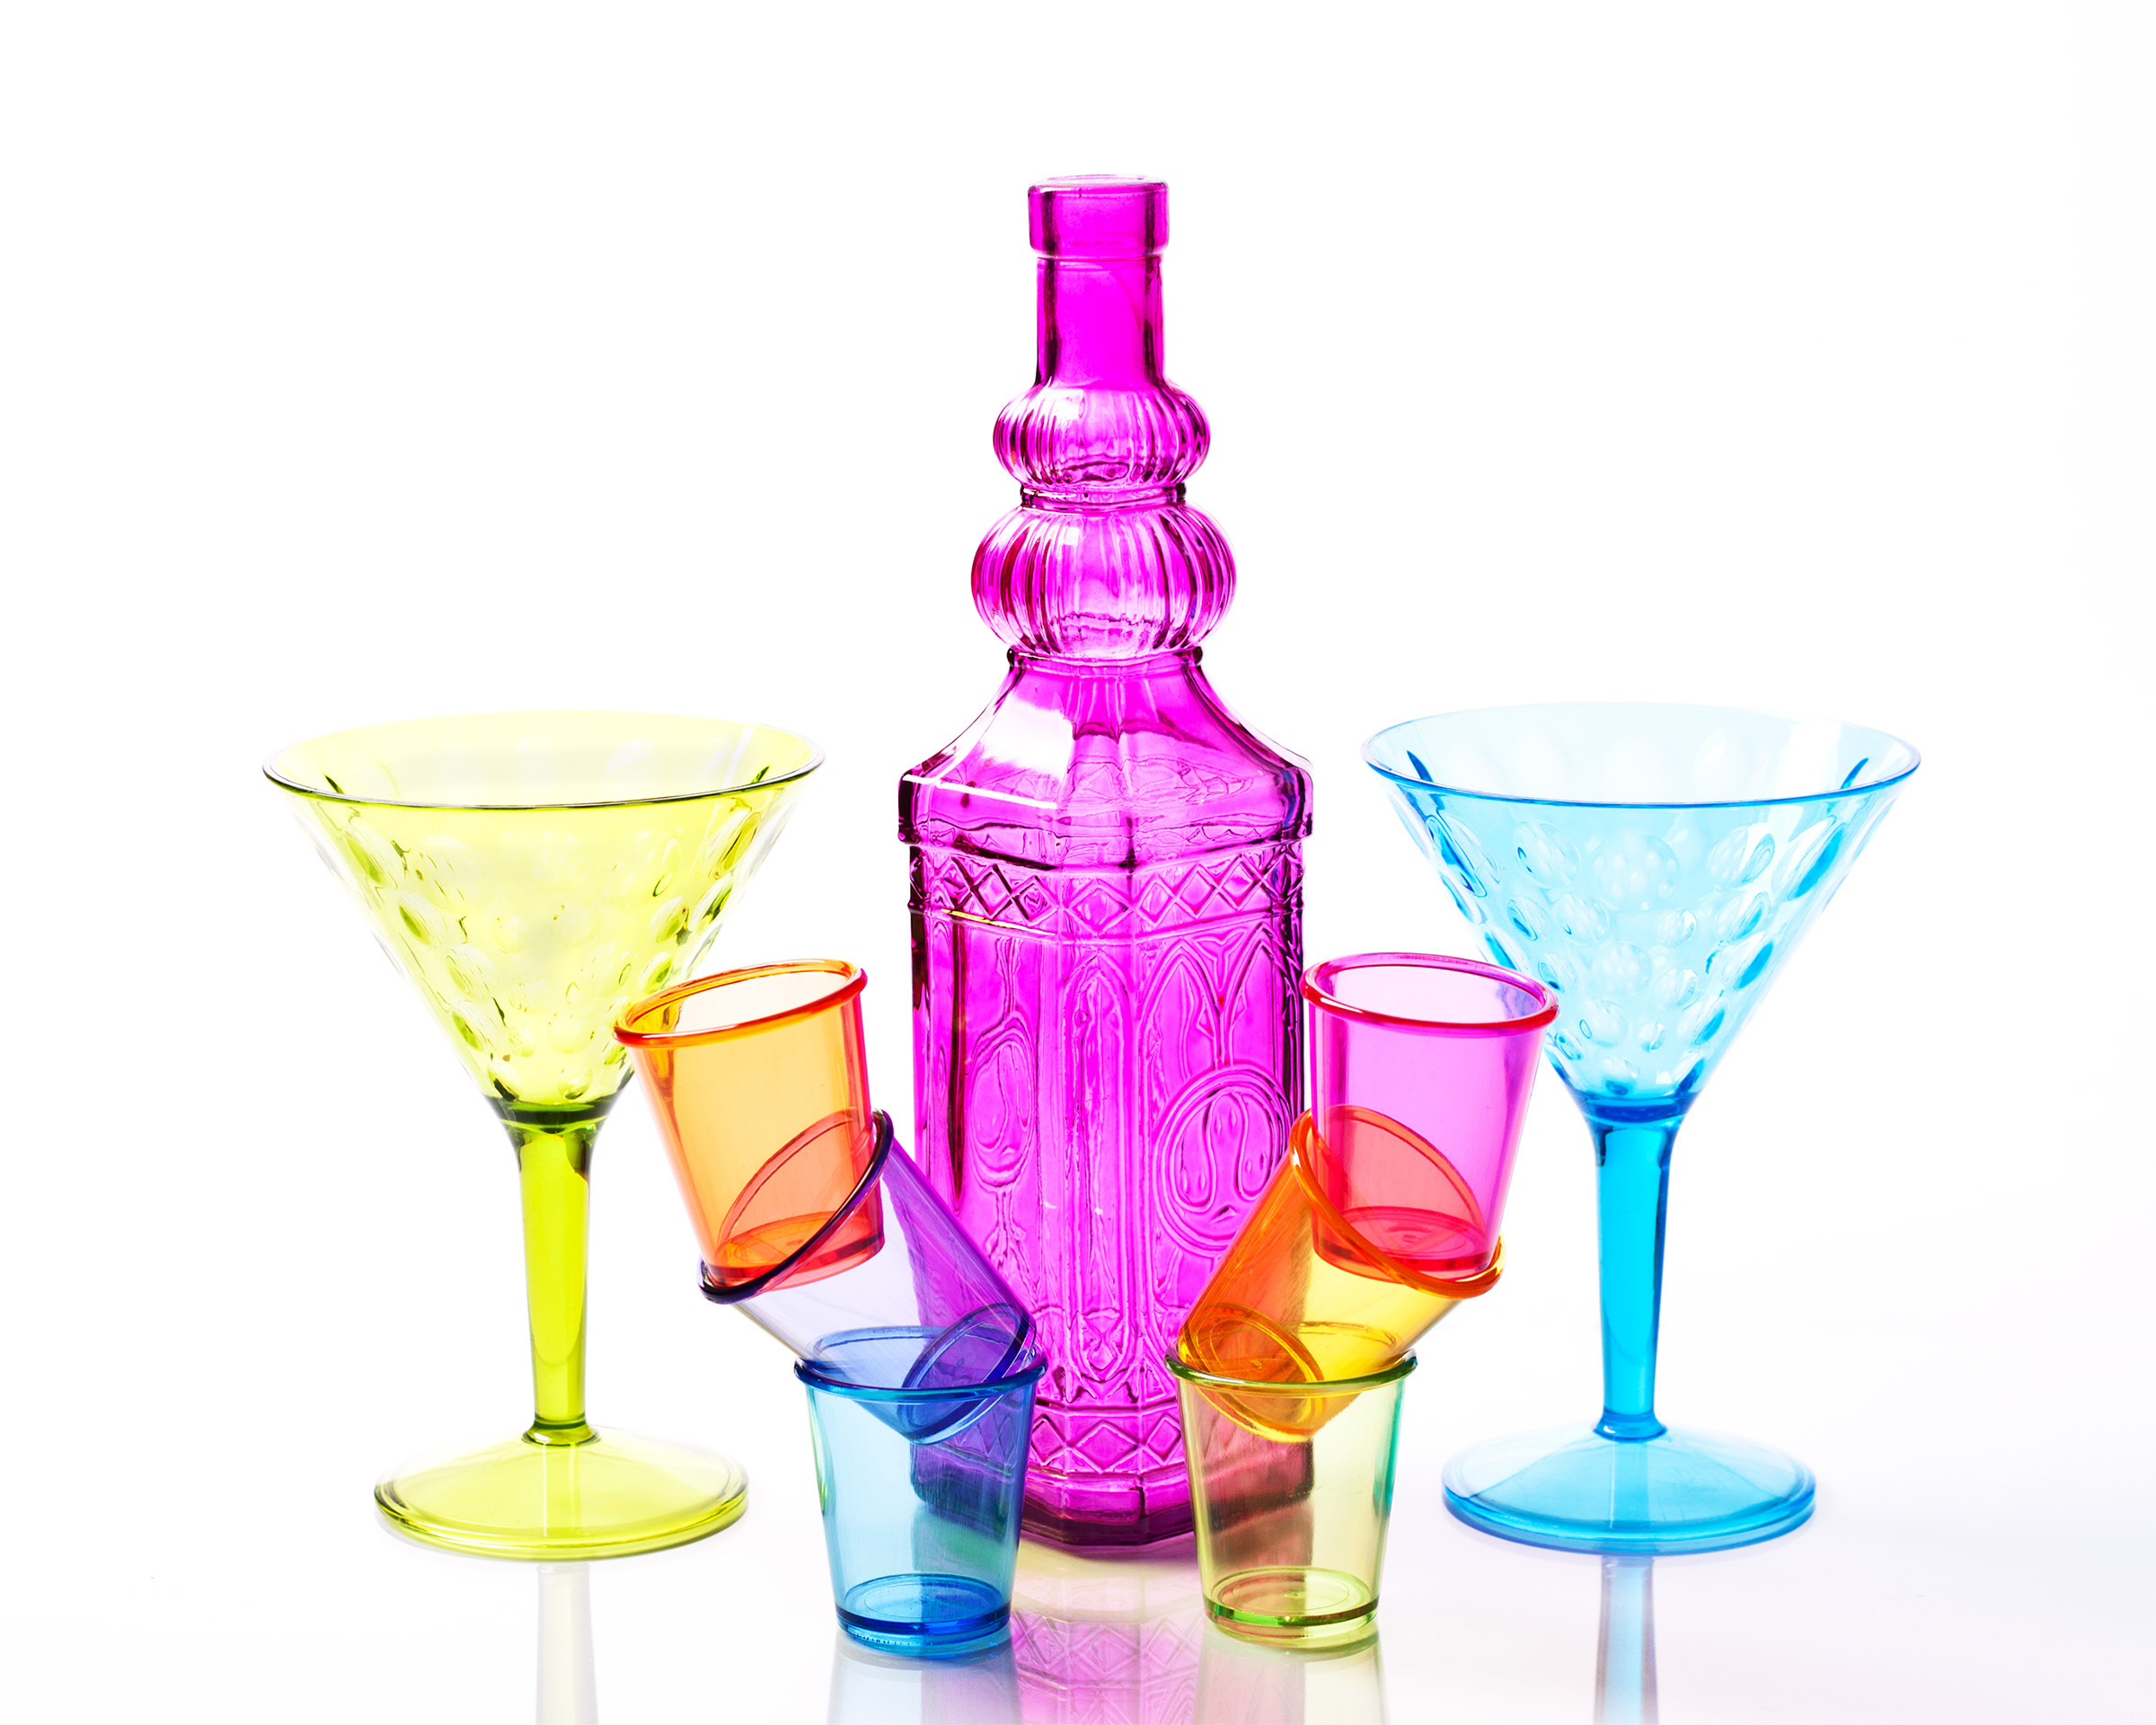 Free photo: Shot glasses and drinking glasses. - Liquid, Vodka, Small ...